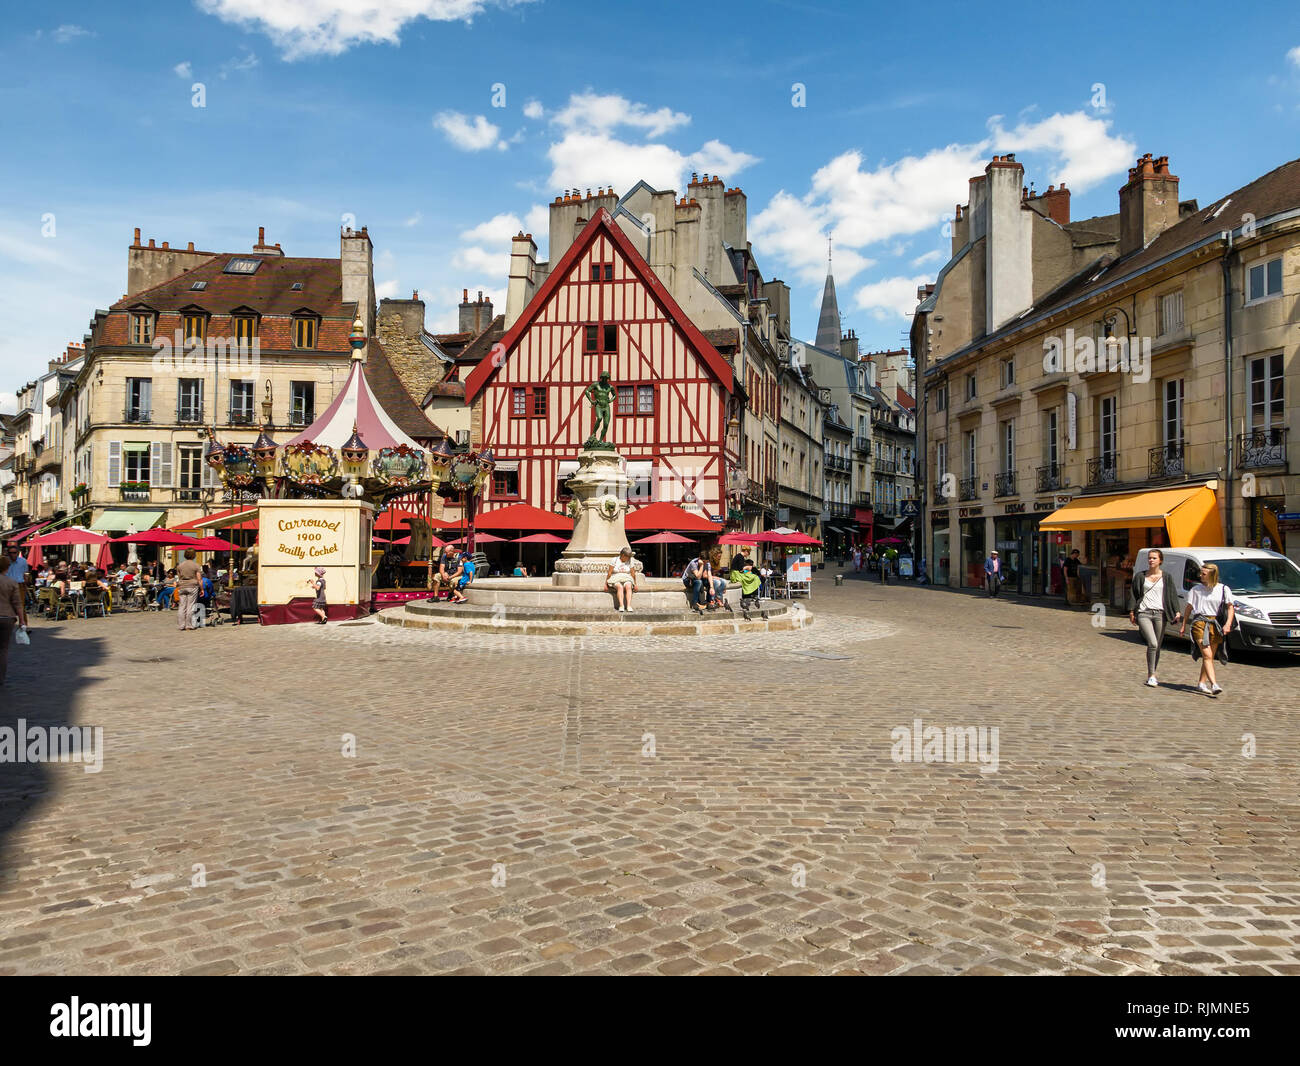 El lugar Francois grosero, Dijon, Borgoña, Francia mostrando la fuente y la bonita cafetería. También un francés merry go round o carrusel en la plaza. Foto de stock